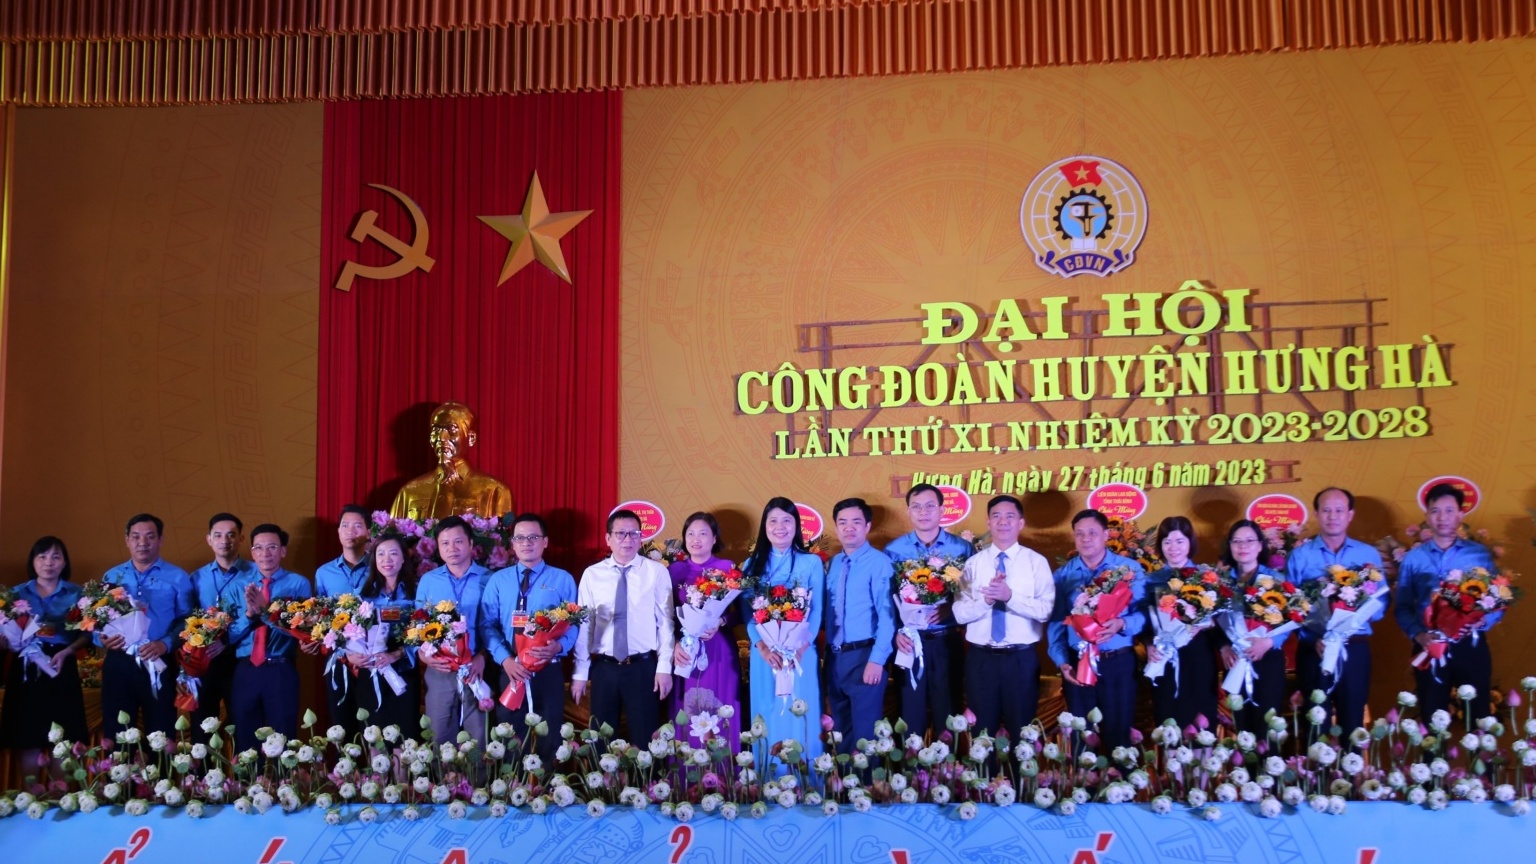 Hơn 10 tỷ đồng chăm lo cho đoàn viên, người lao động huyện Hưng Hà (Thái Bình)